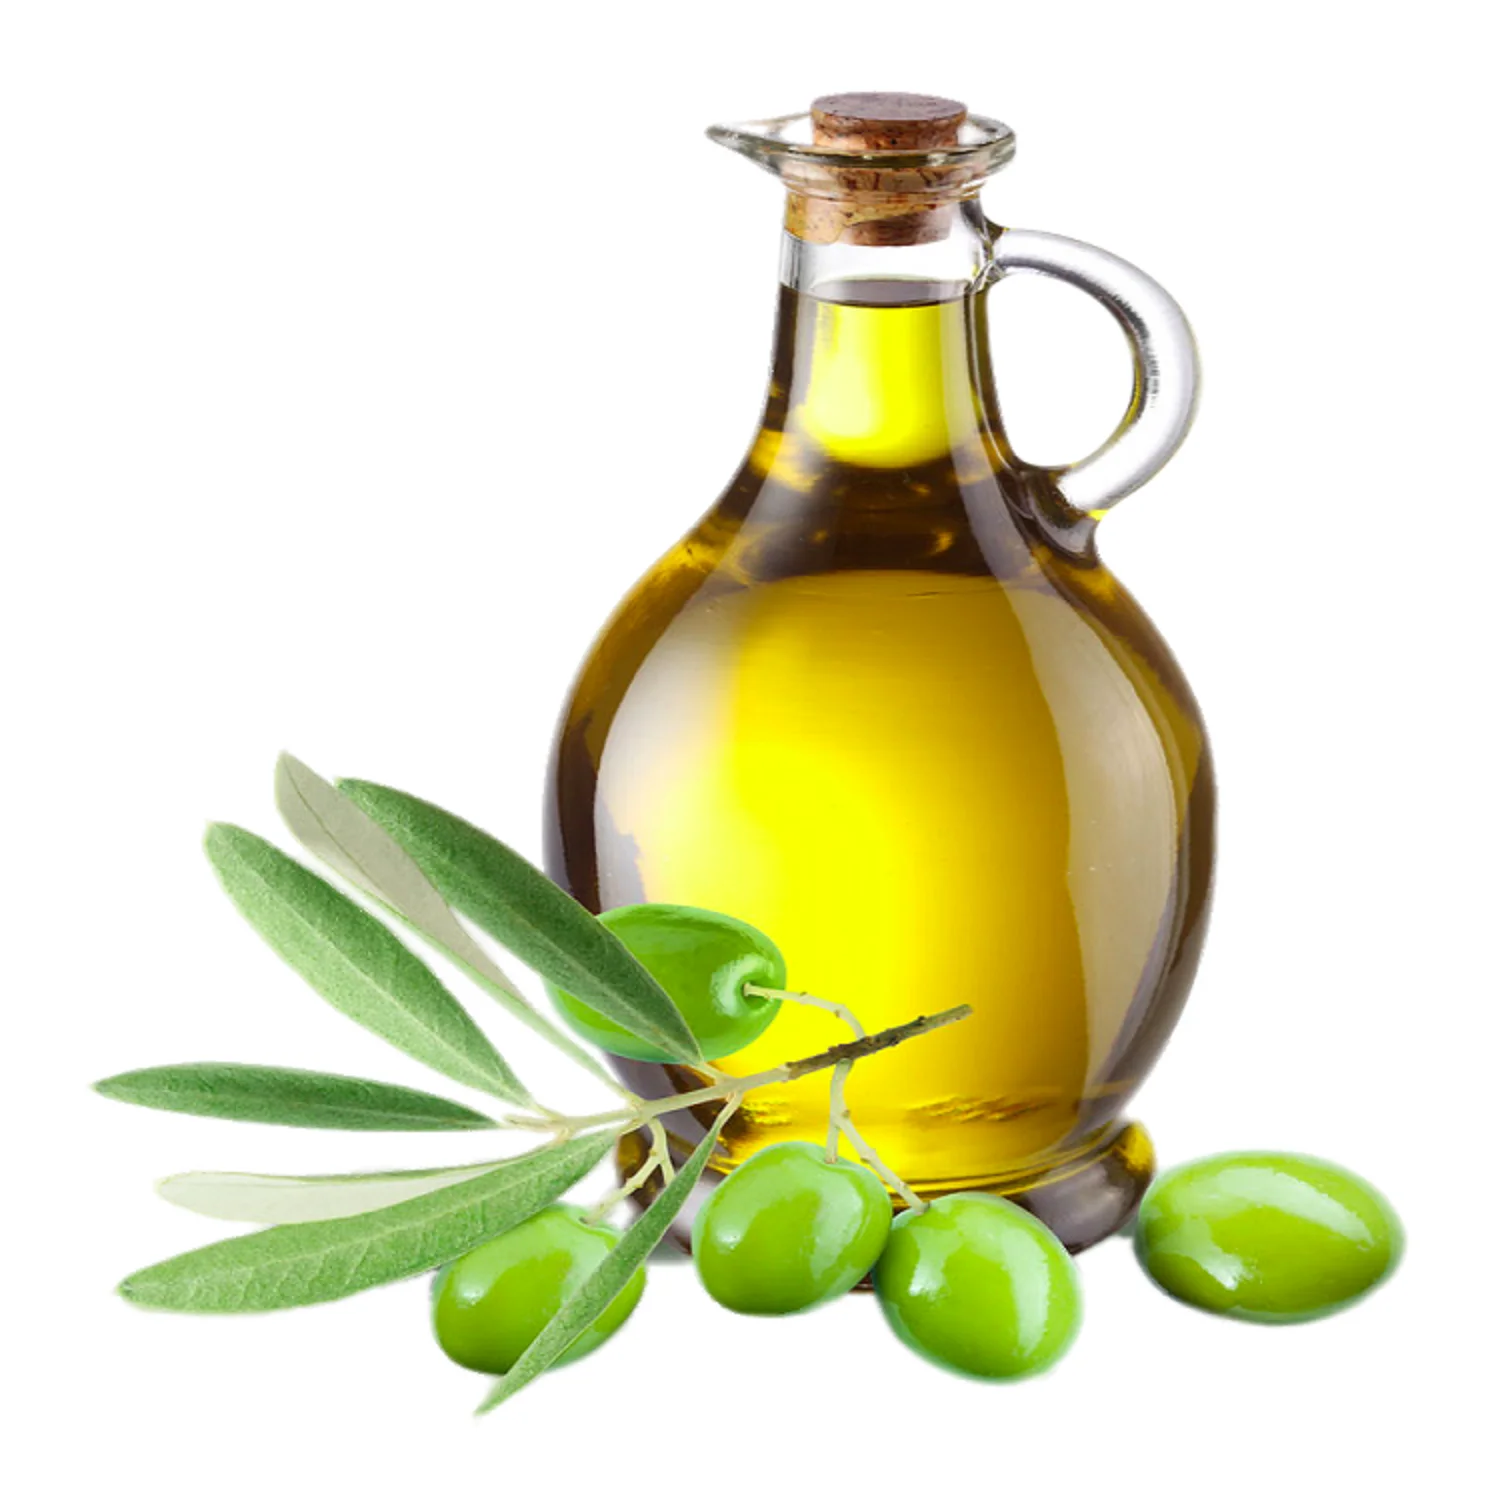 Olive Oil масло оливковое. Олив Ойл масло оливковое. Масло оливковое natural Olive Oil. Масло оливы, жожоба оливы. Оливковое масло застывает